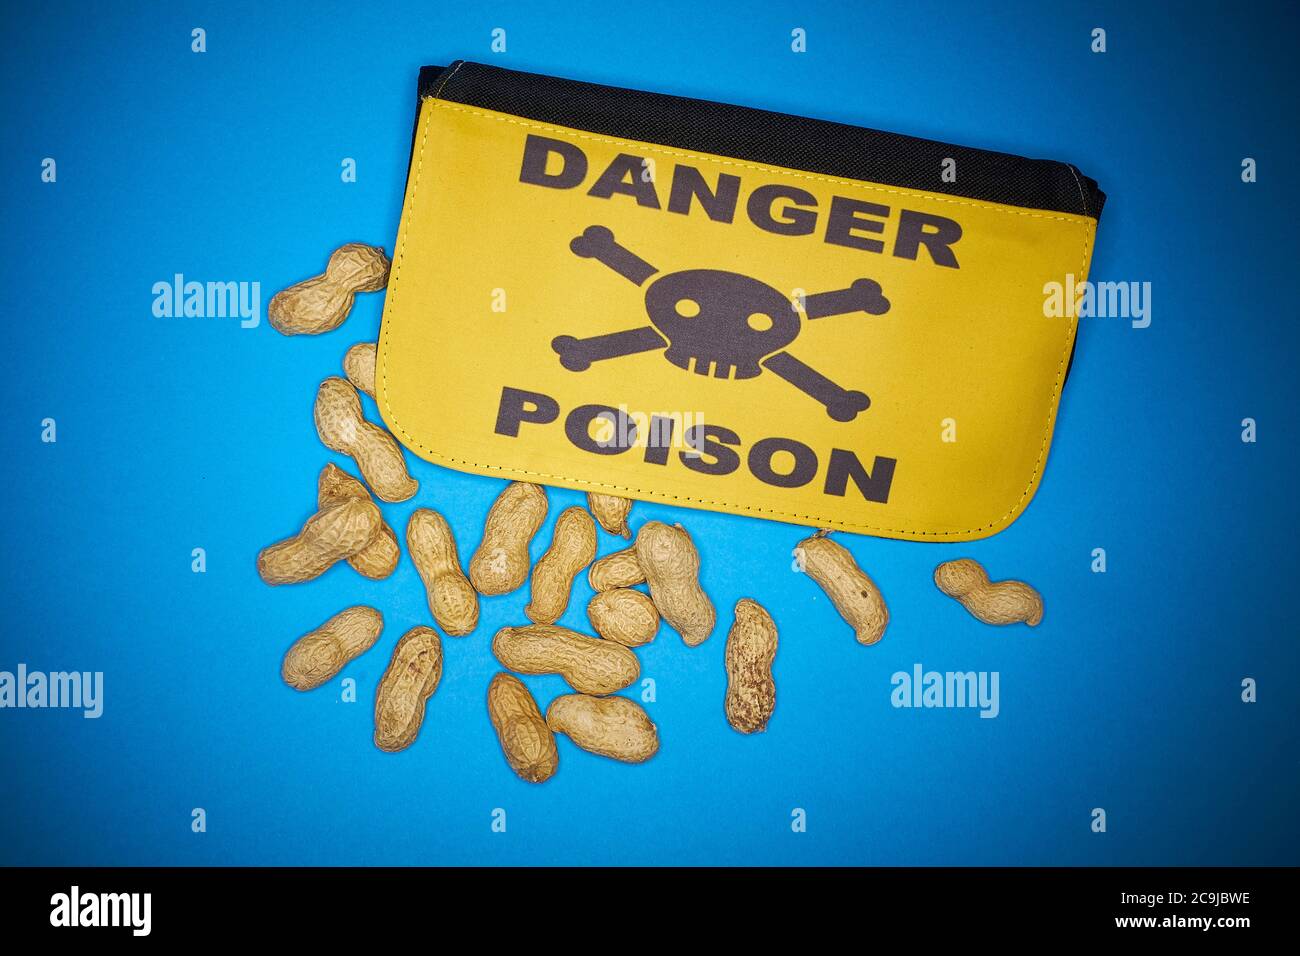 Arachides et sac avec danger poison, concept d'allergie, illustration. Banque D'Images